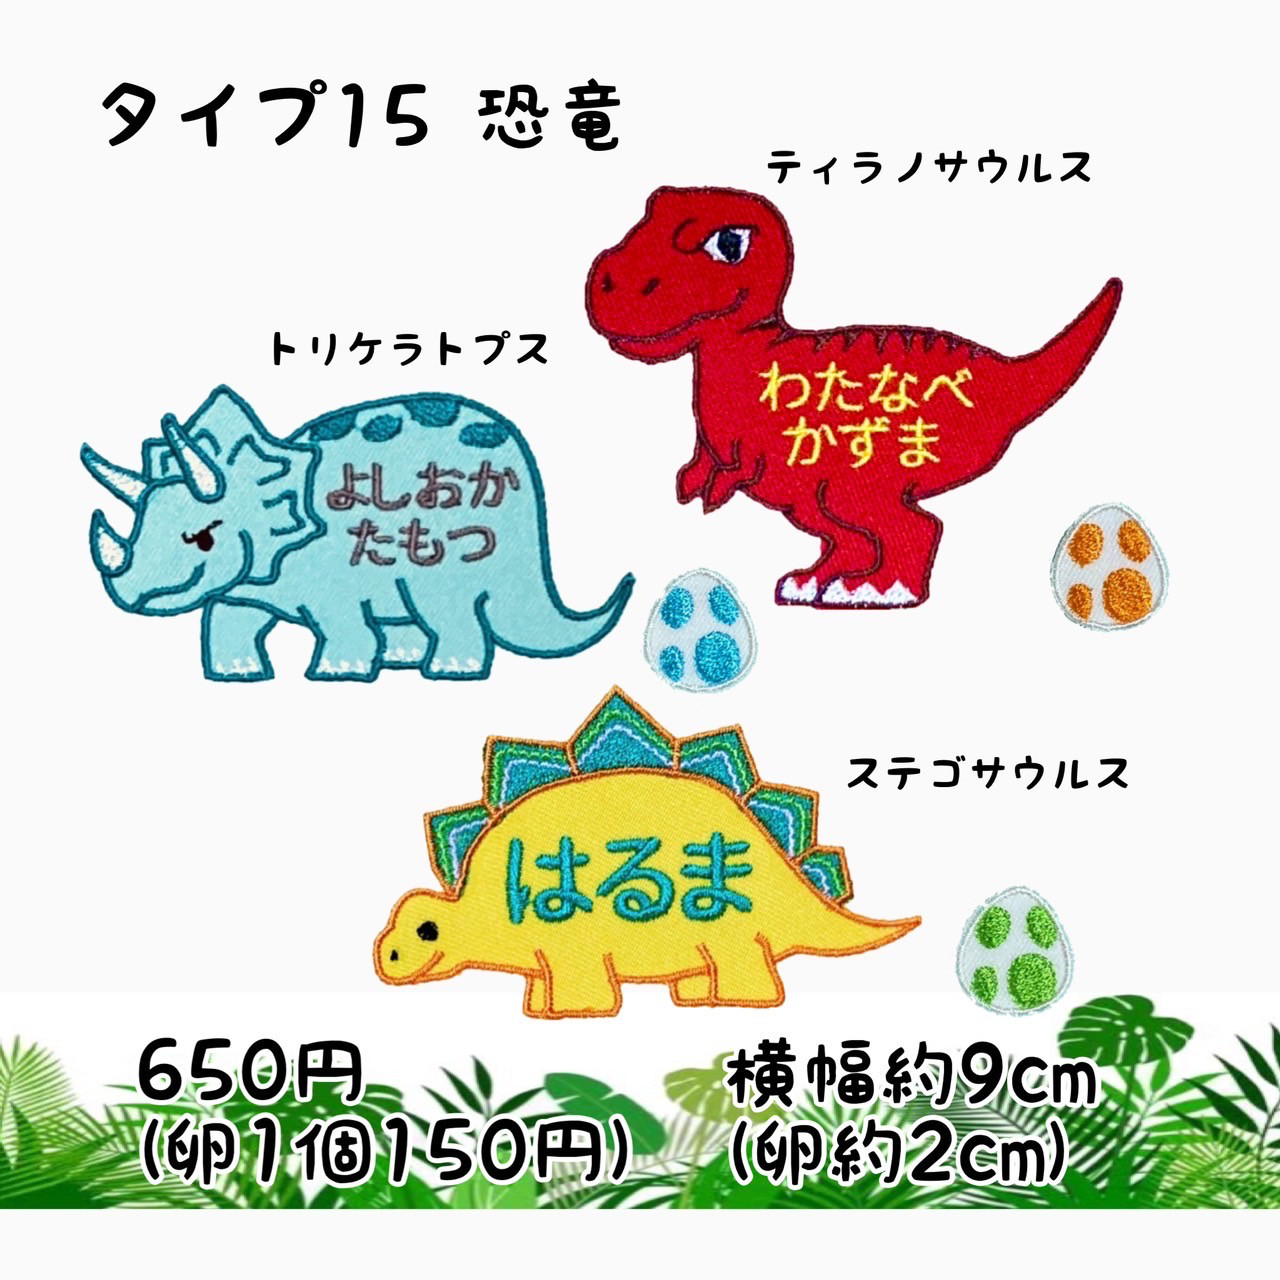 お名前ワッペン☆恐竜☆ティラノサウルス☆トリケラトプス